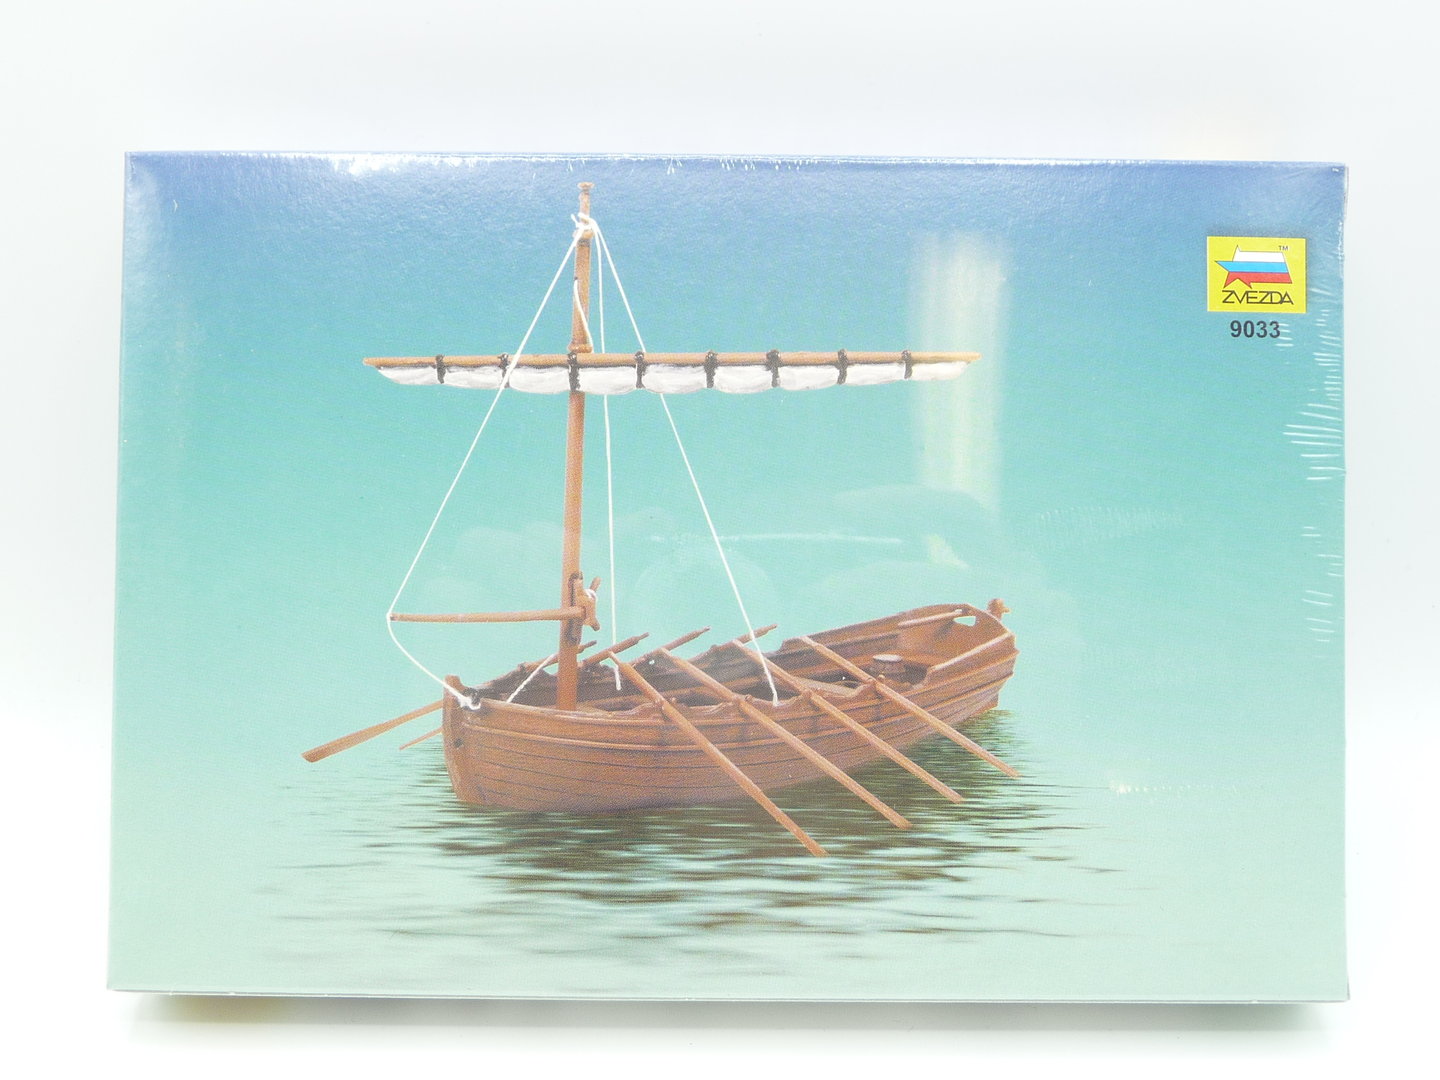 1/72 Medieval Life Boat Plastic Model KIT ZVEZDA 9033 